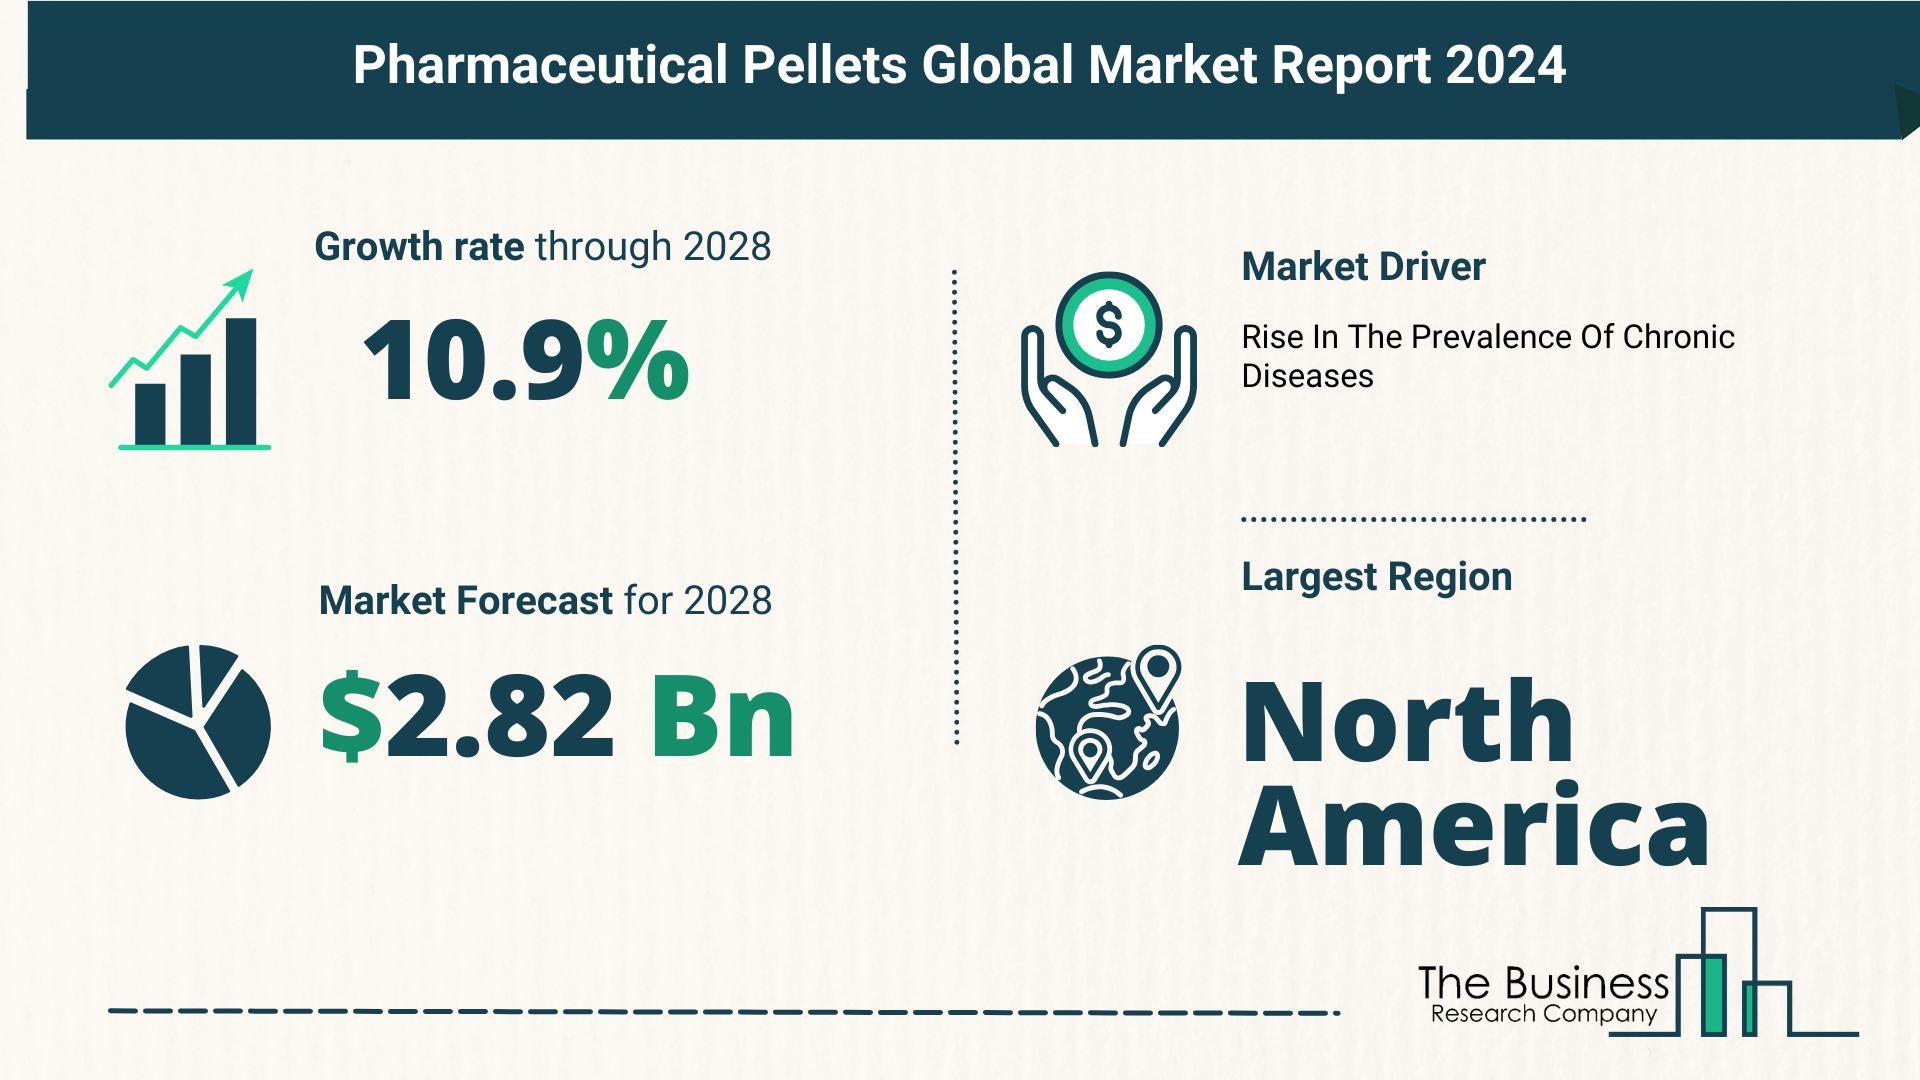 Global Pharmaceutical Pellets Market